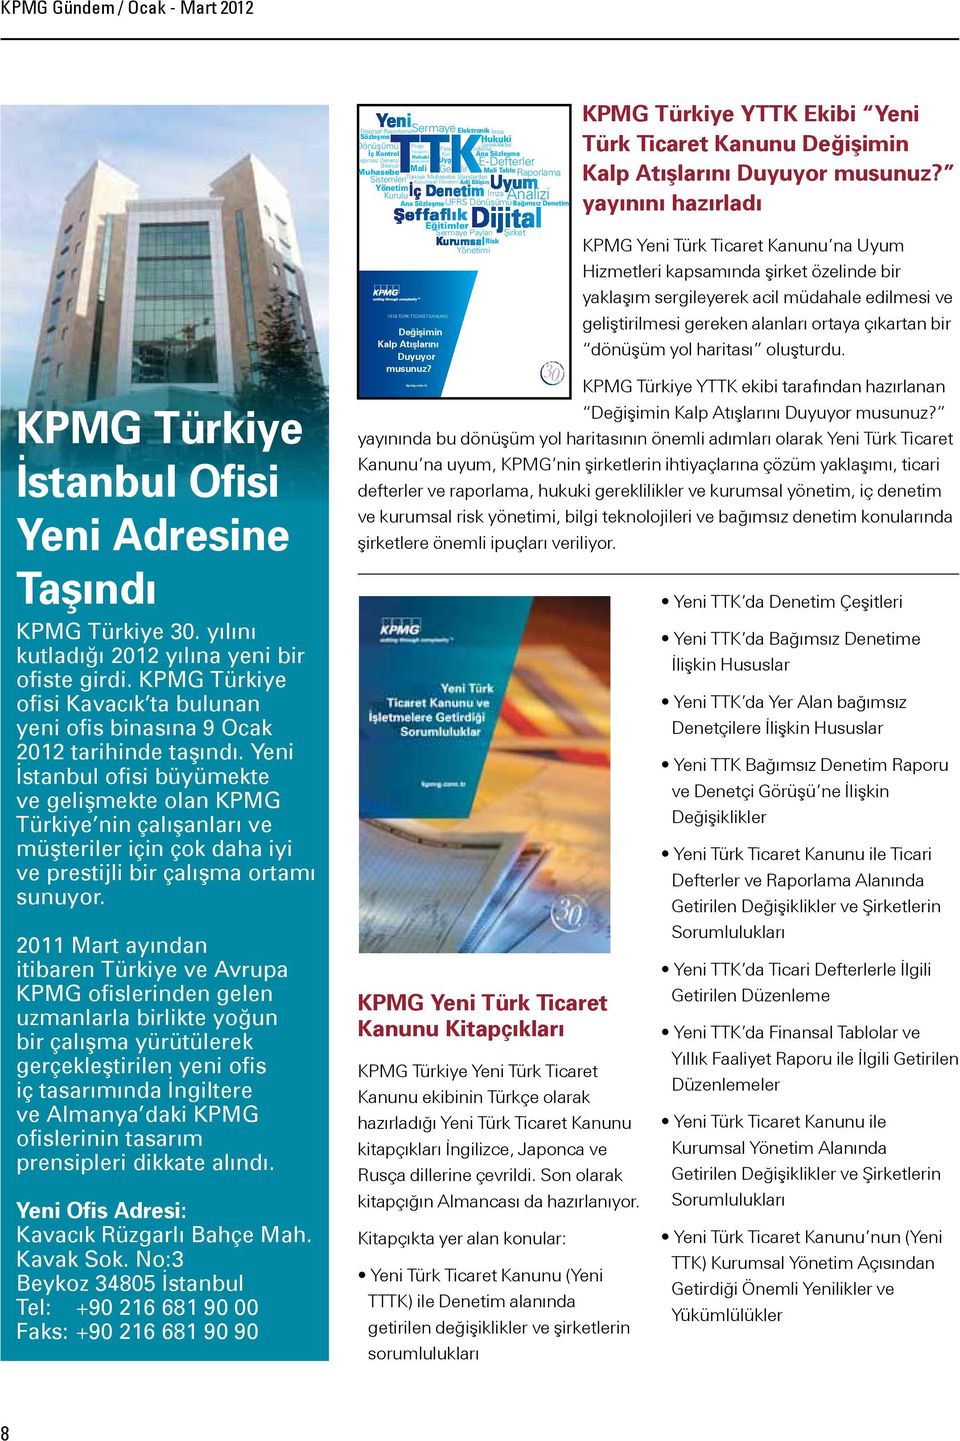 Yeni İstanbul ofisi büyümekte ve gelişmekte olan KPMG Türkiye nin çalışanları ve müşteriler için çok daha iyi ve prestijli bir çalışma ortamı sunuyor.